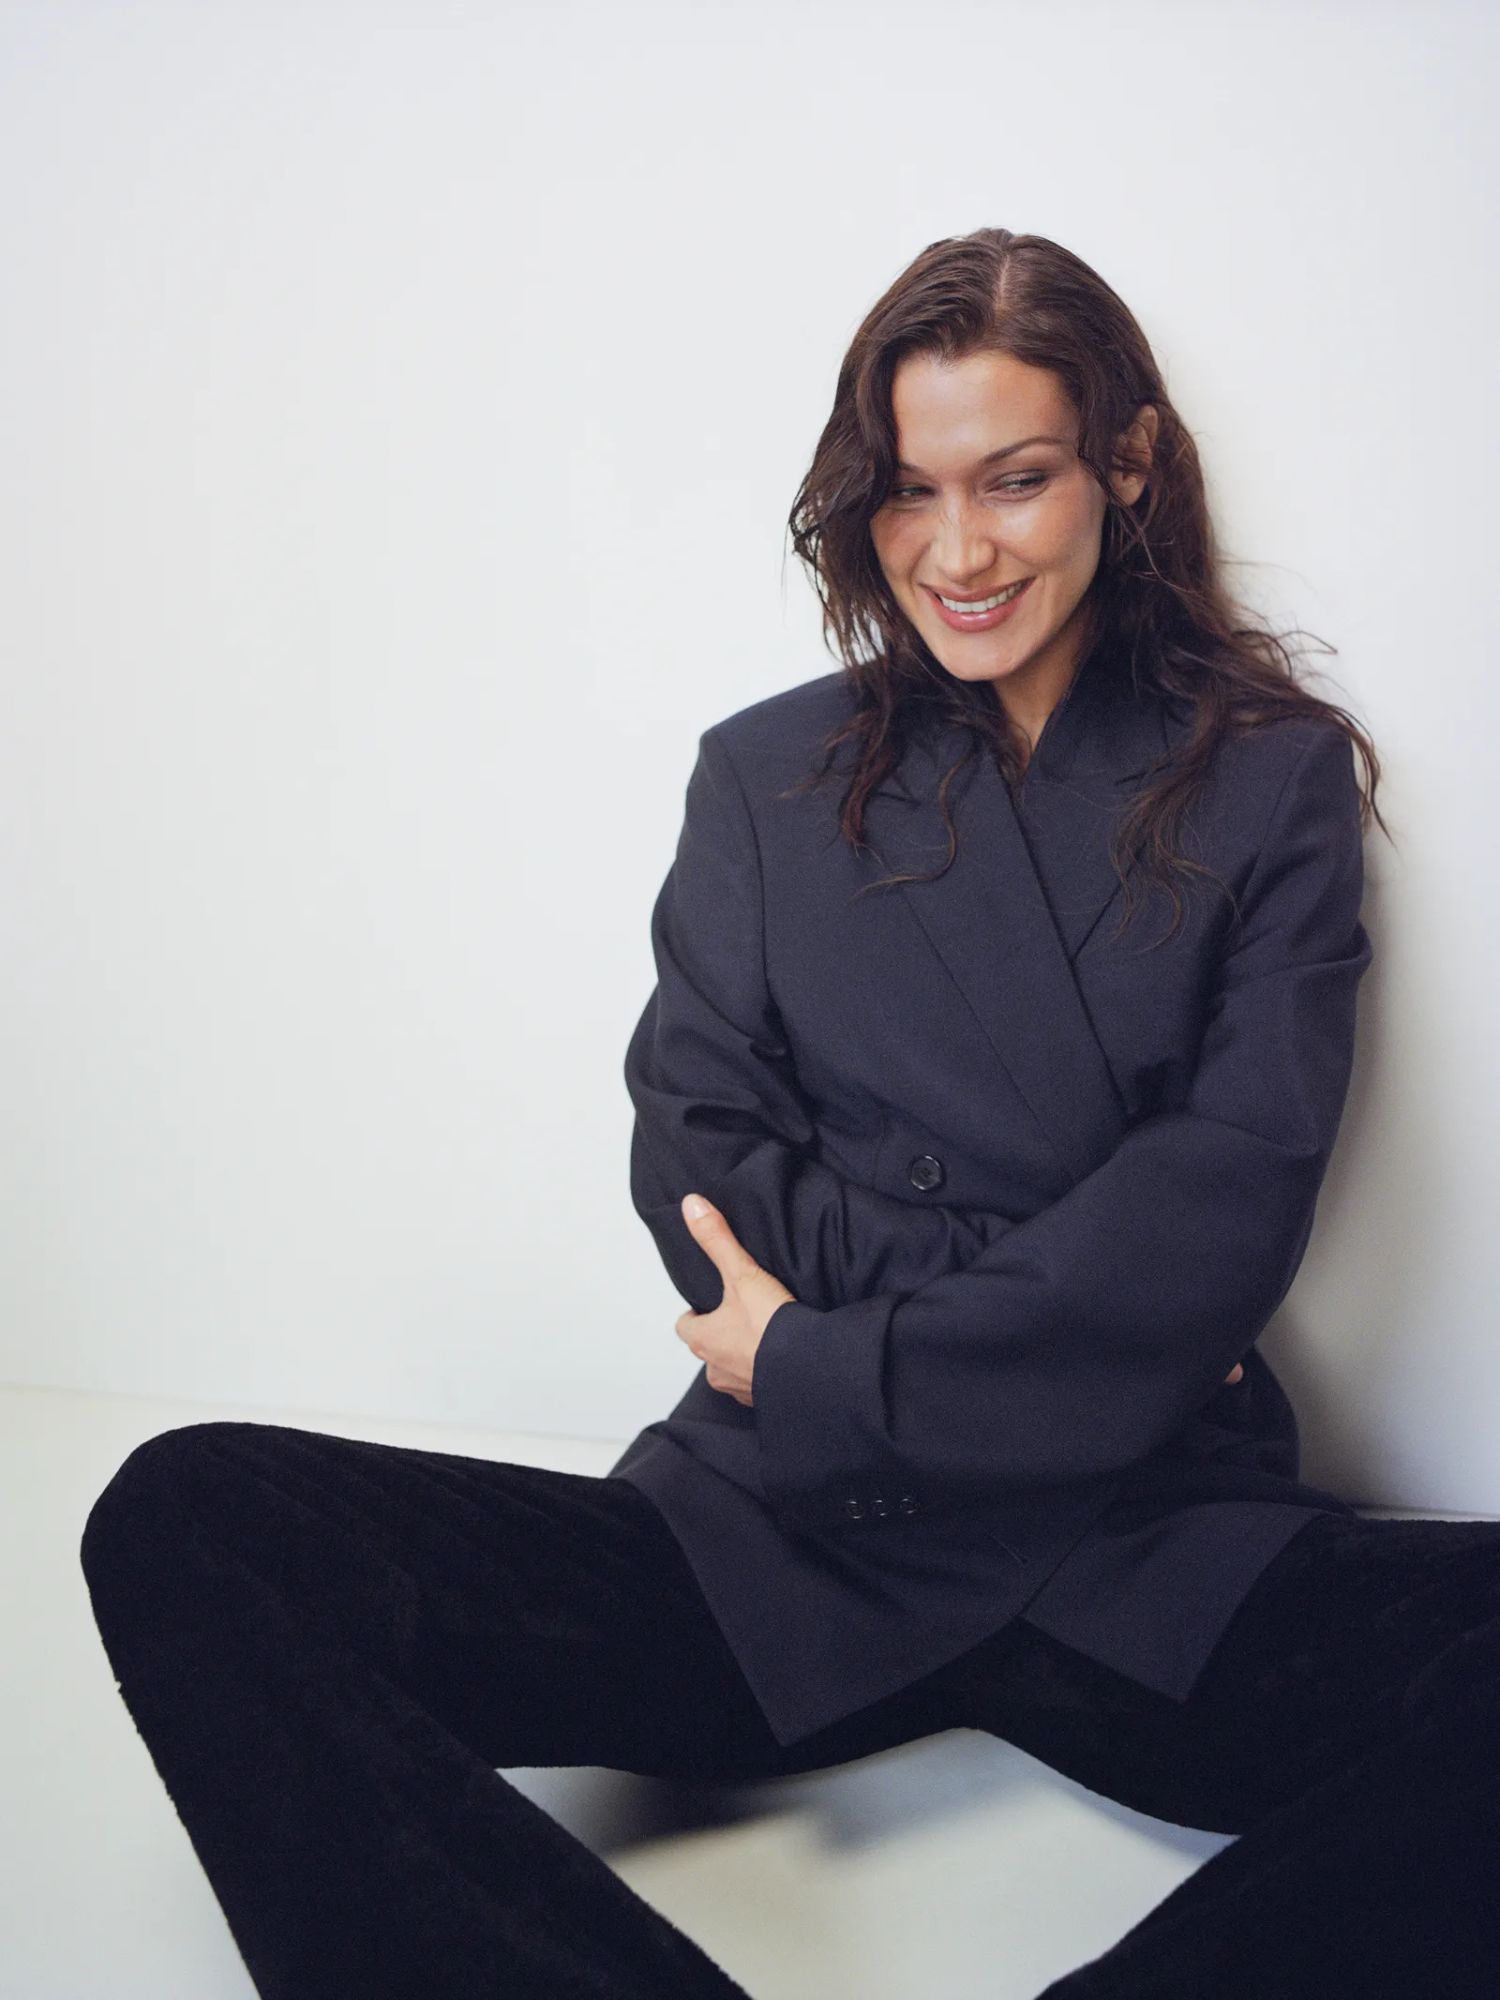 Bella Hadid in Loewe Black Suit by Zoe Ghertner and Alex Harrington for Vogue MyTheresa